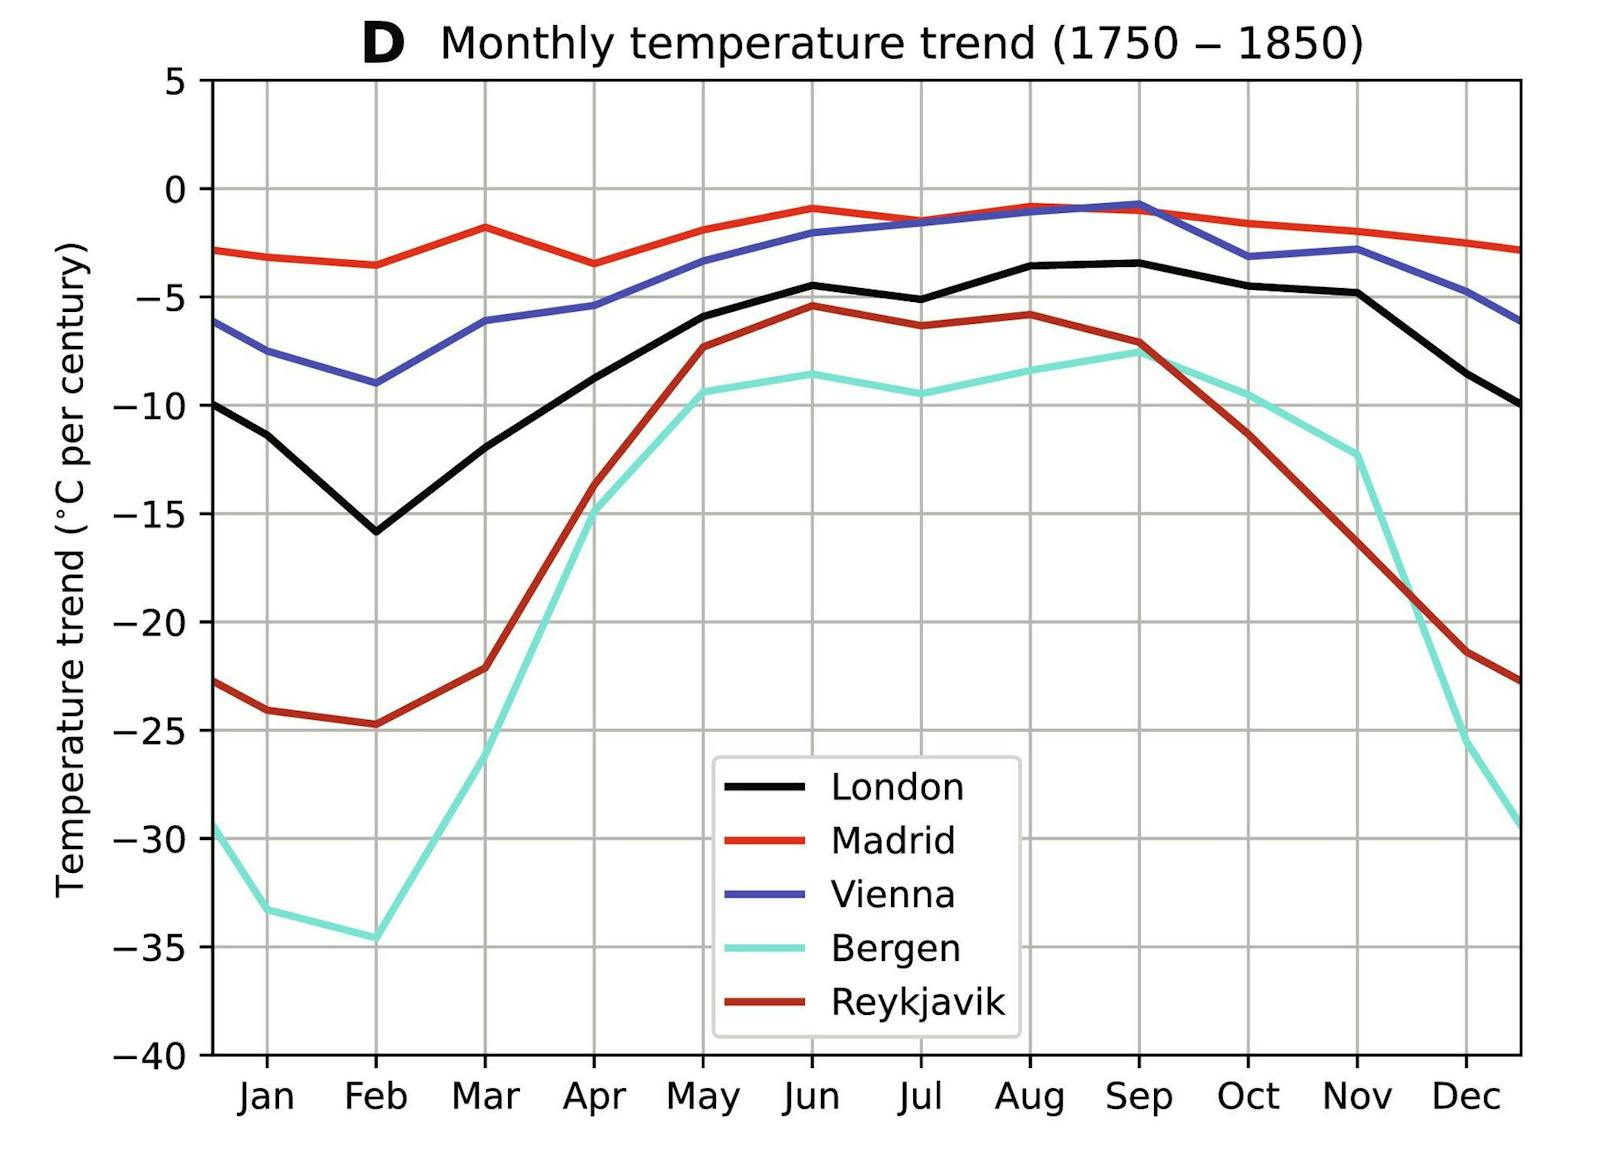 In einigen Monaten würden die Temperaturen dadurch massiv abfallen. Besonders Skandinavien wäre davon massiv betroffen.